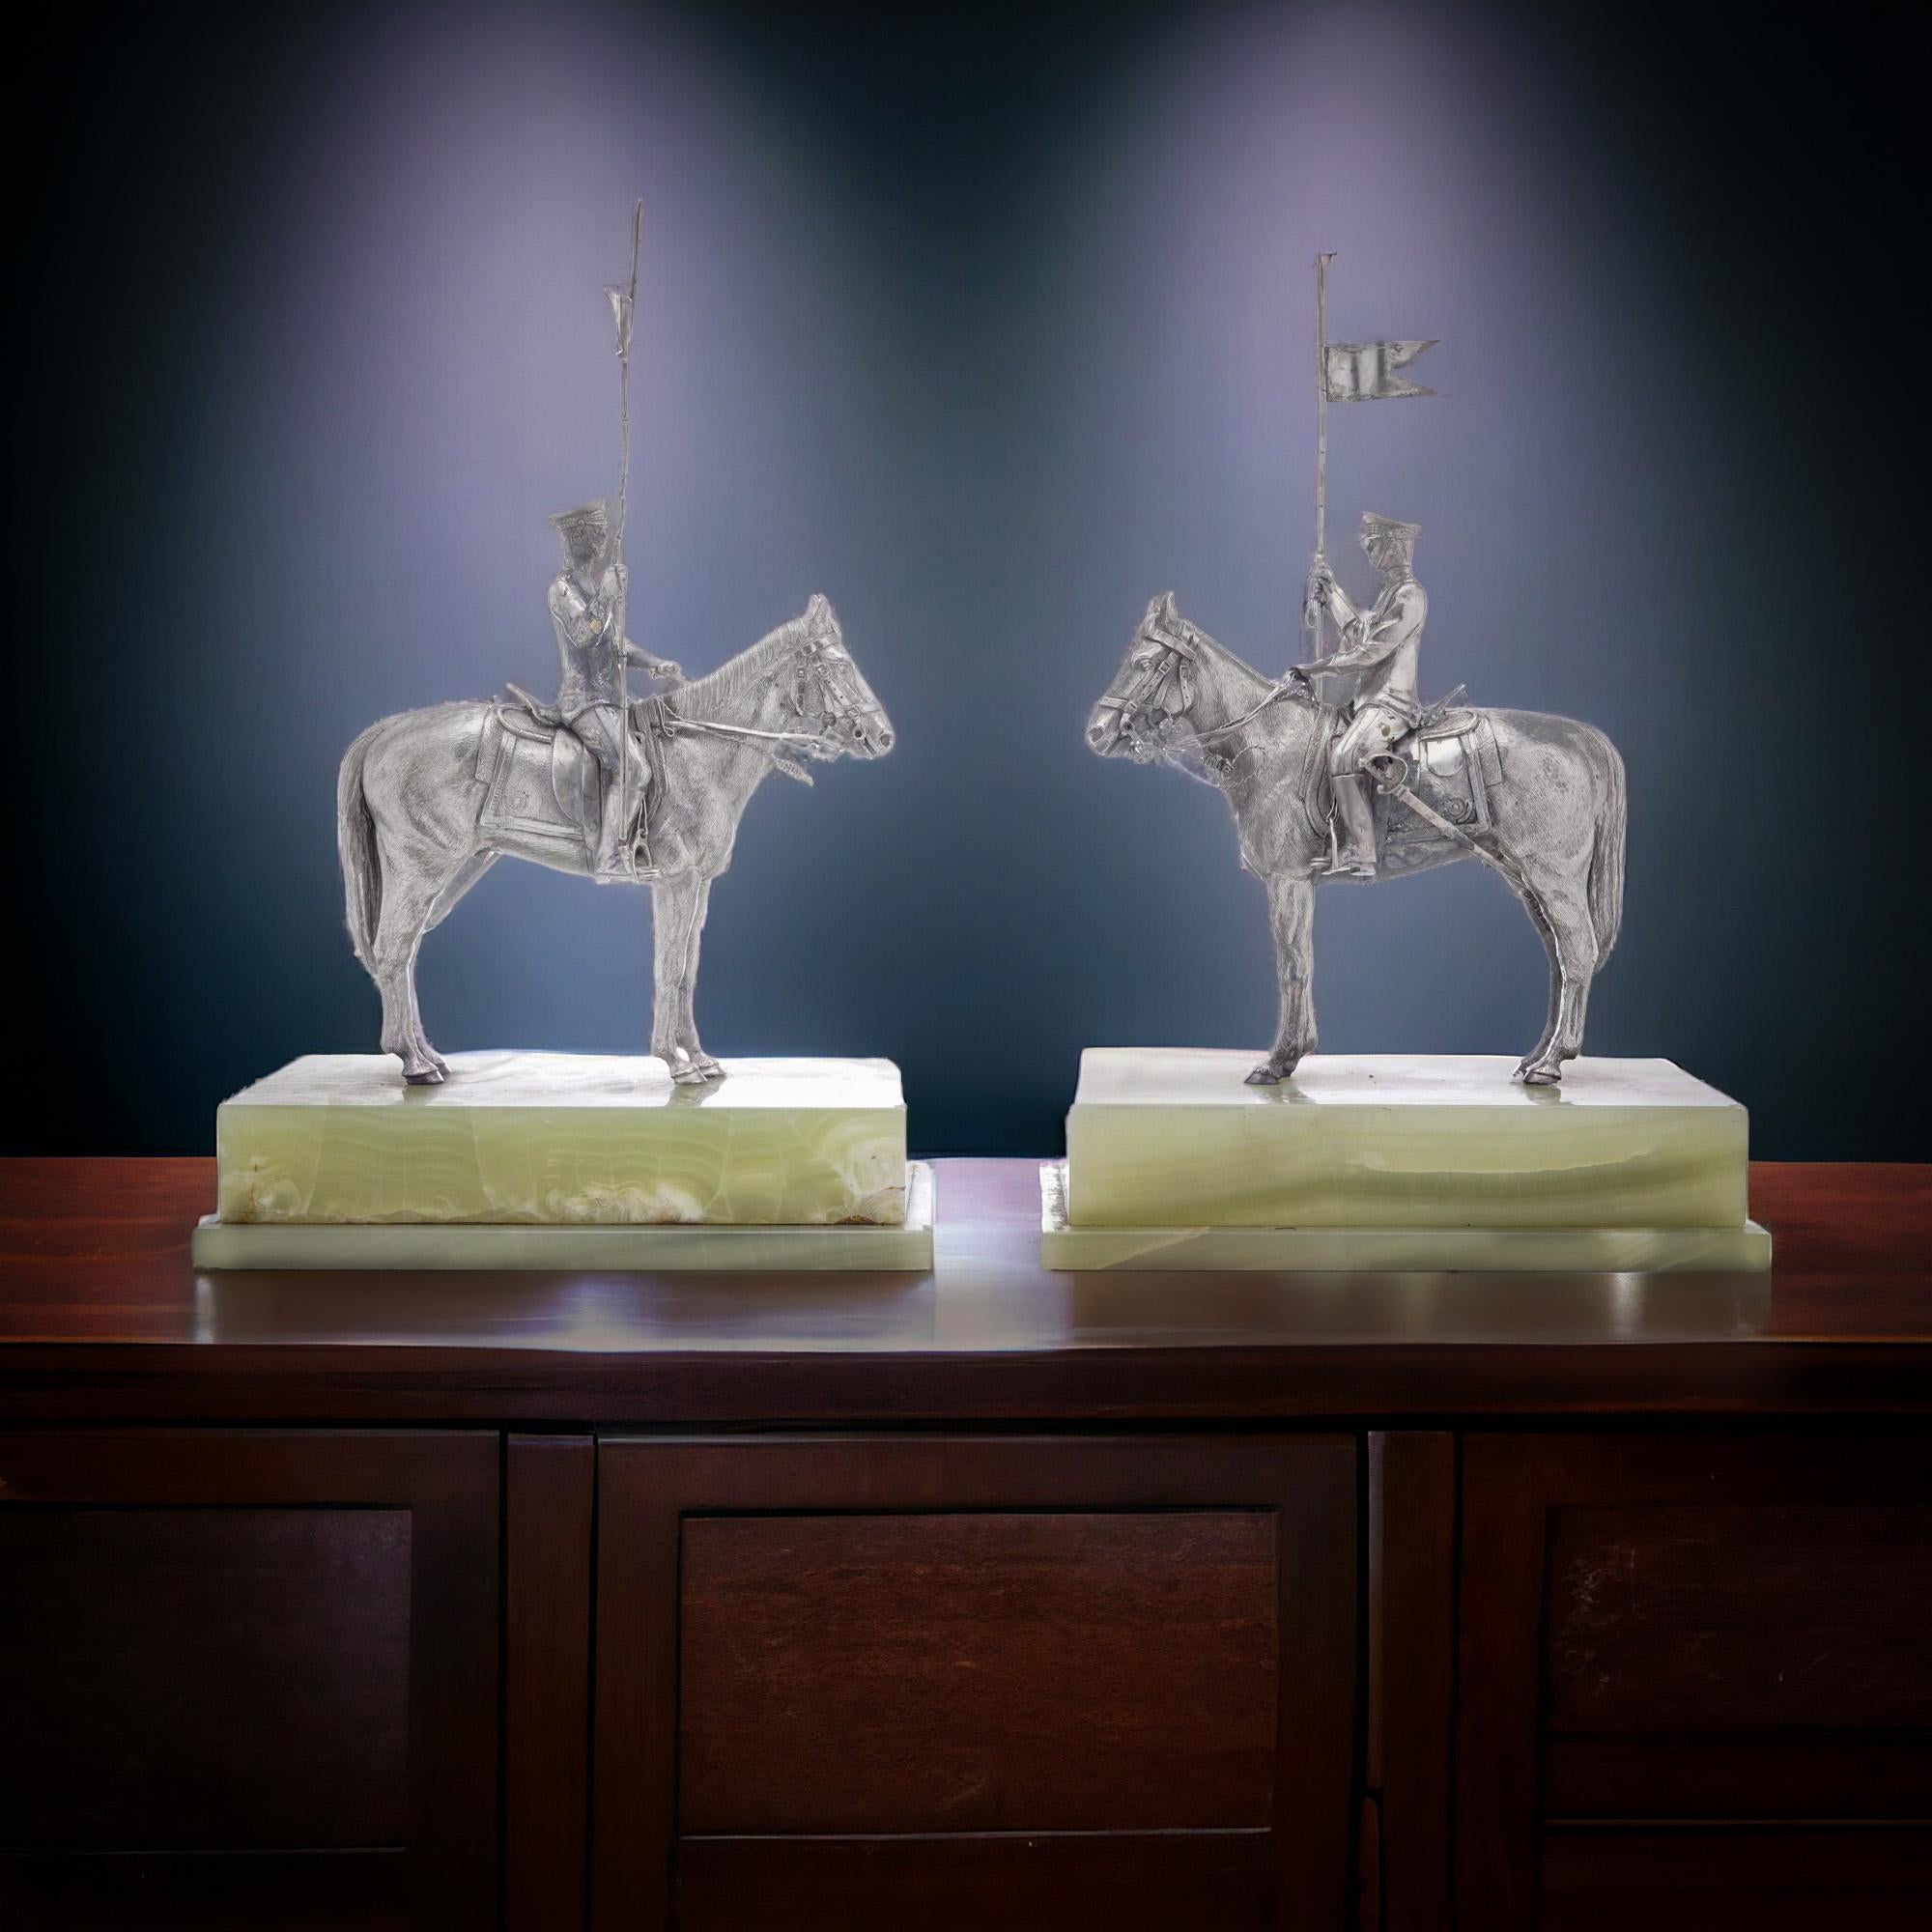 Asprey Paar oder reitet massivem Silber Figuren auf Marmor Sockel
Hergestellt in London, 1977
Hersteller: Asprey & Co
Vollständig gepunzt.

Größe: 14,9 x 7,8 x 22,5 cm
Gewicht: 2812 Gramm insgesamt (1406 Gramm pro Stück)

Zustand: Figuren